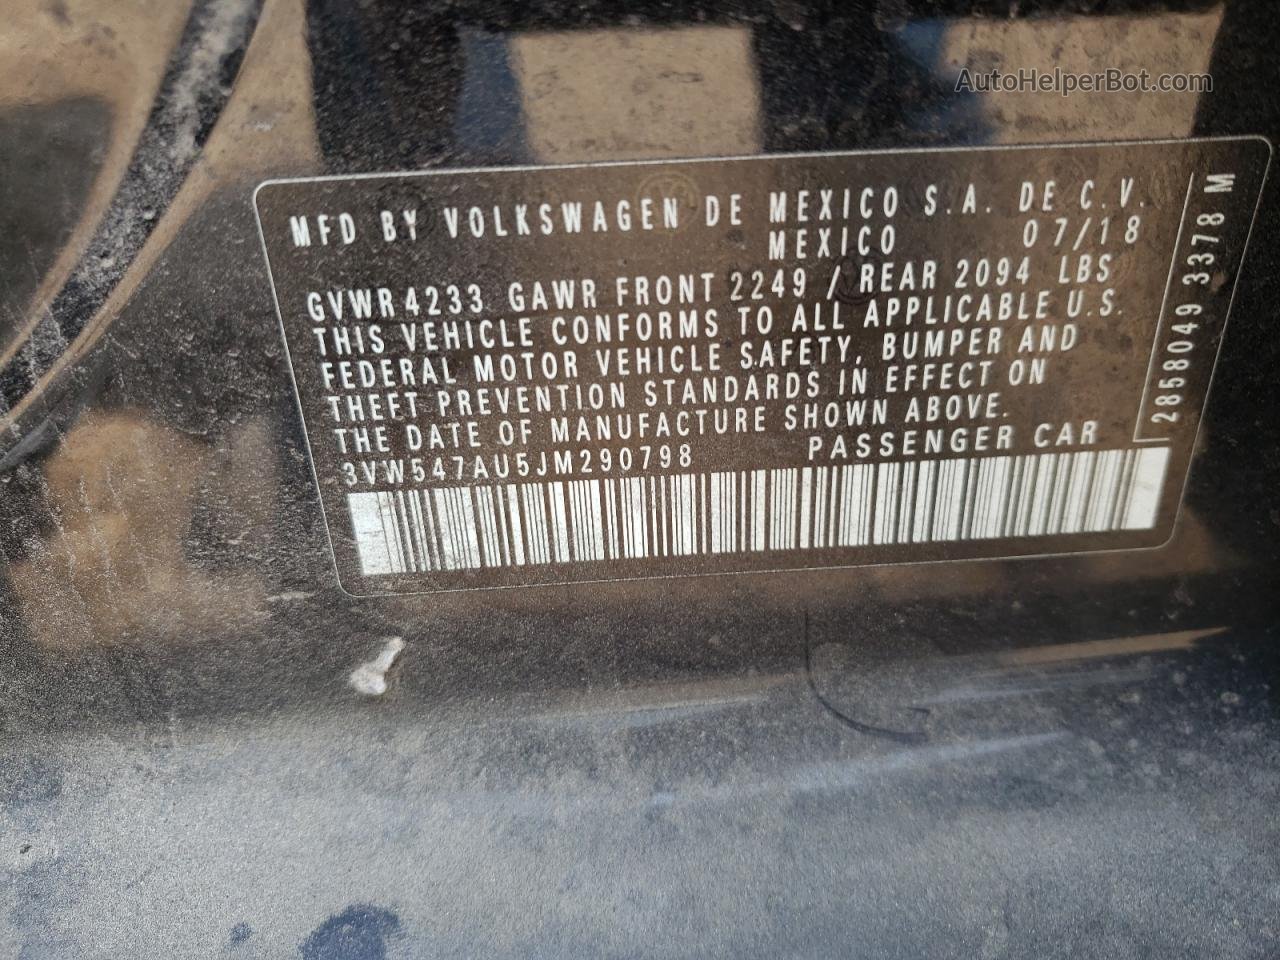 2018 Volkswagen Gti S Черный vin: 3VW547AU5JM290798